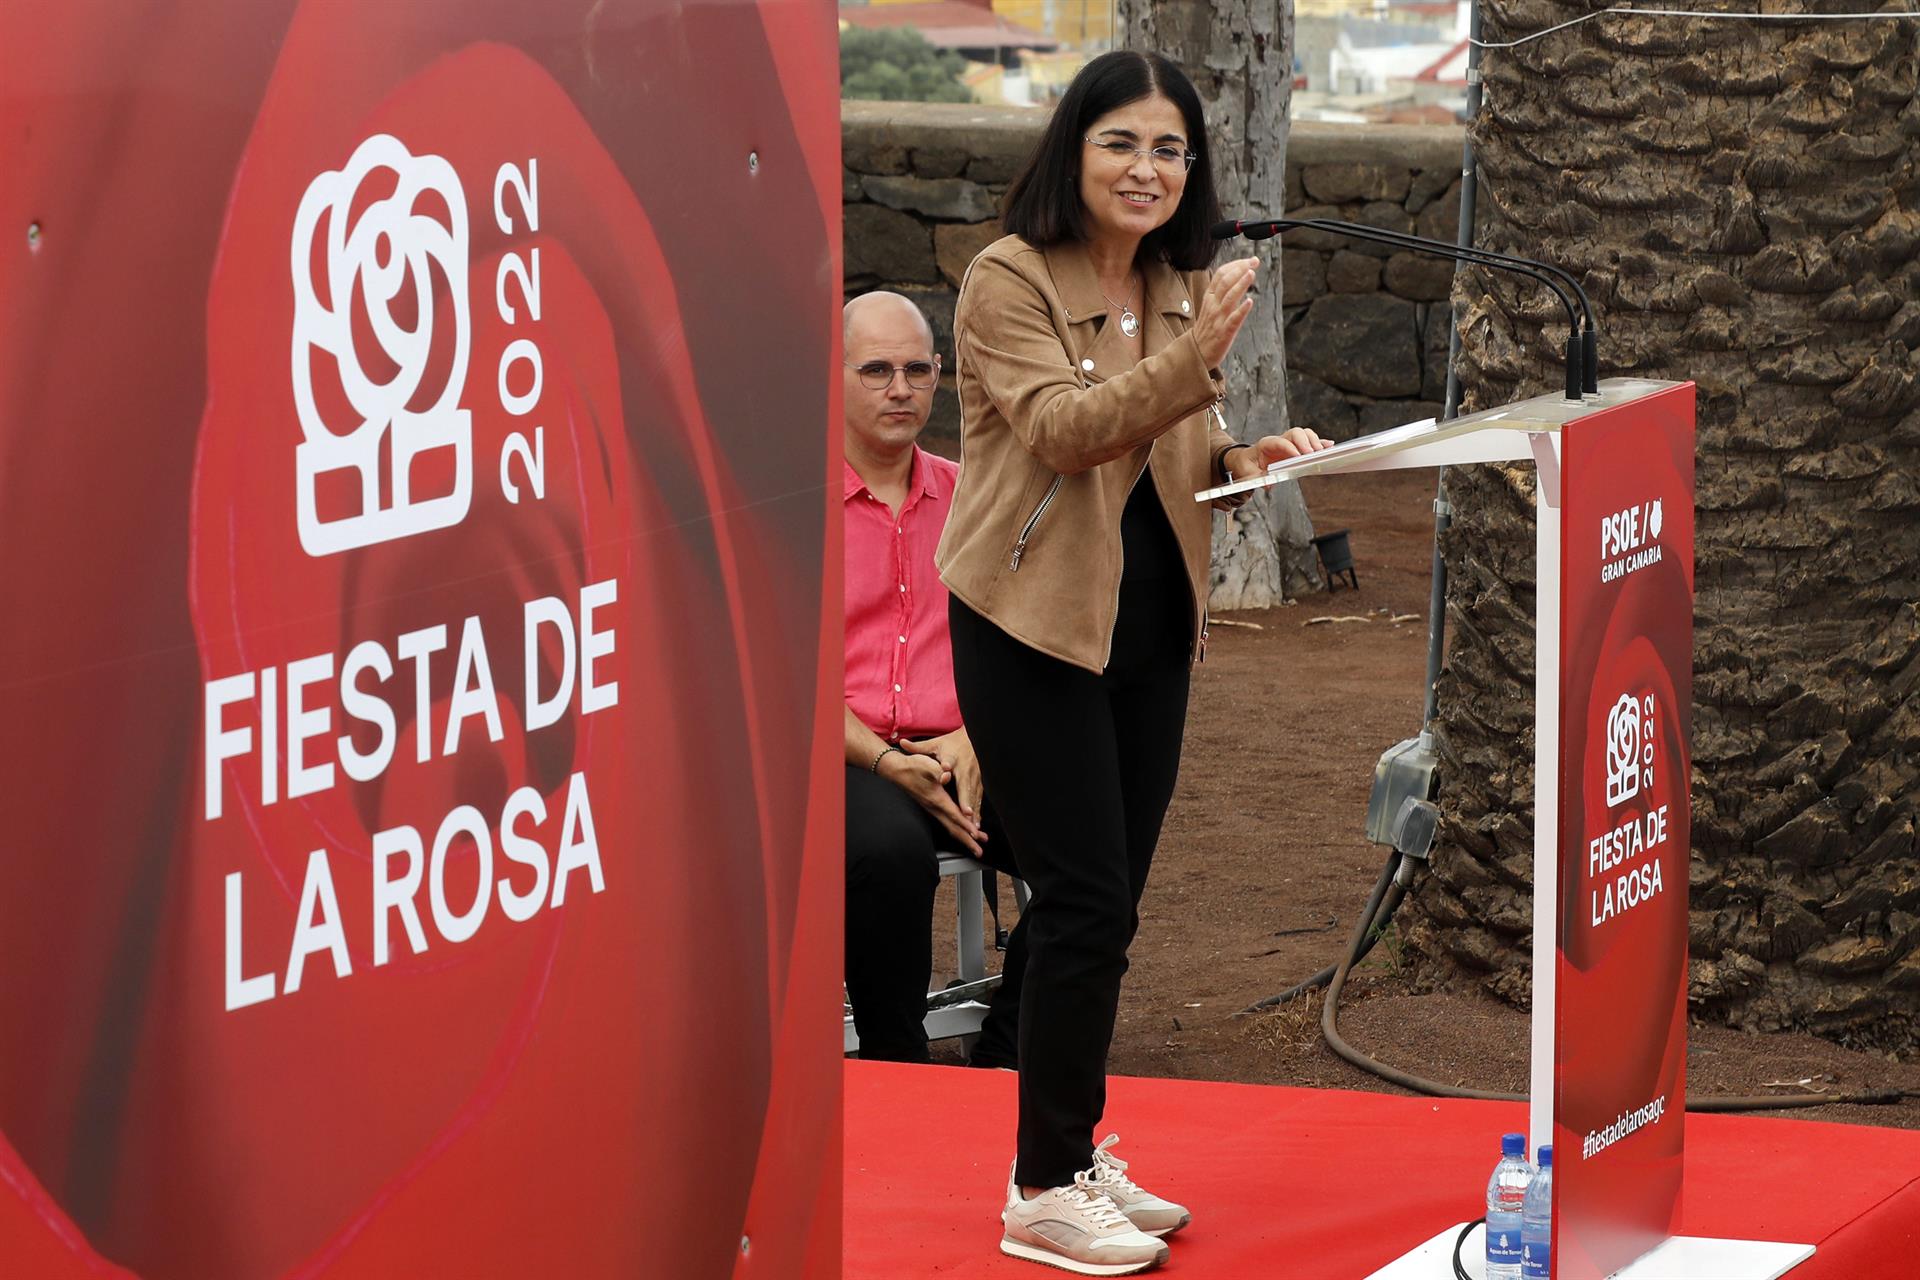 La ministra de Sanidad, Carolina Darias, durante su intervención este domingo en Arucas (Gran Canaria) en la "Fiesta de la rosa" que organizó su partido, el PSOE. EFE/ Elvira Urquijo A.